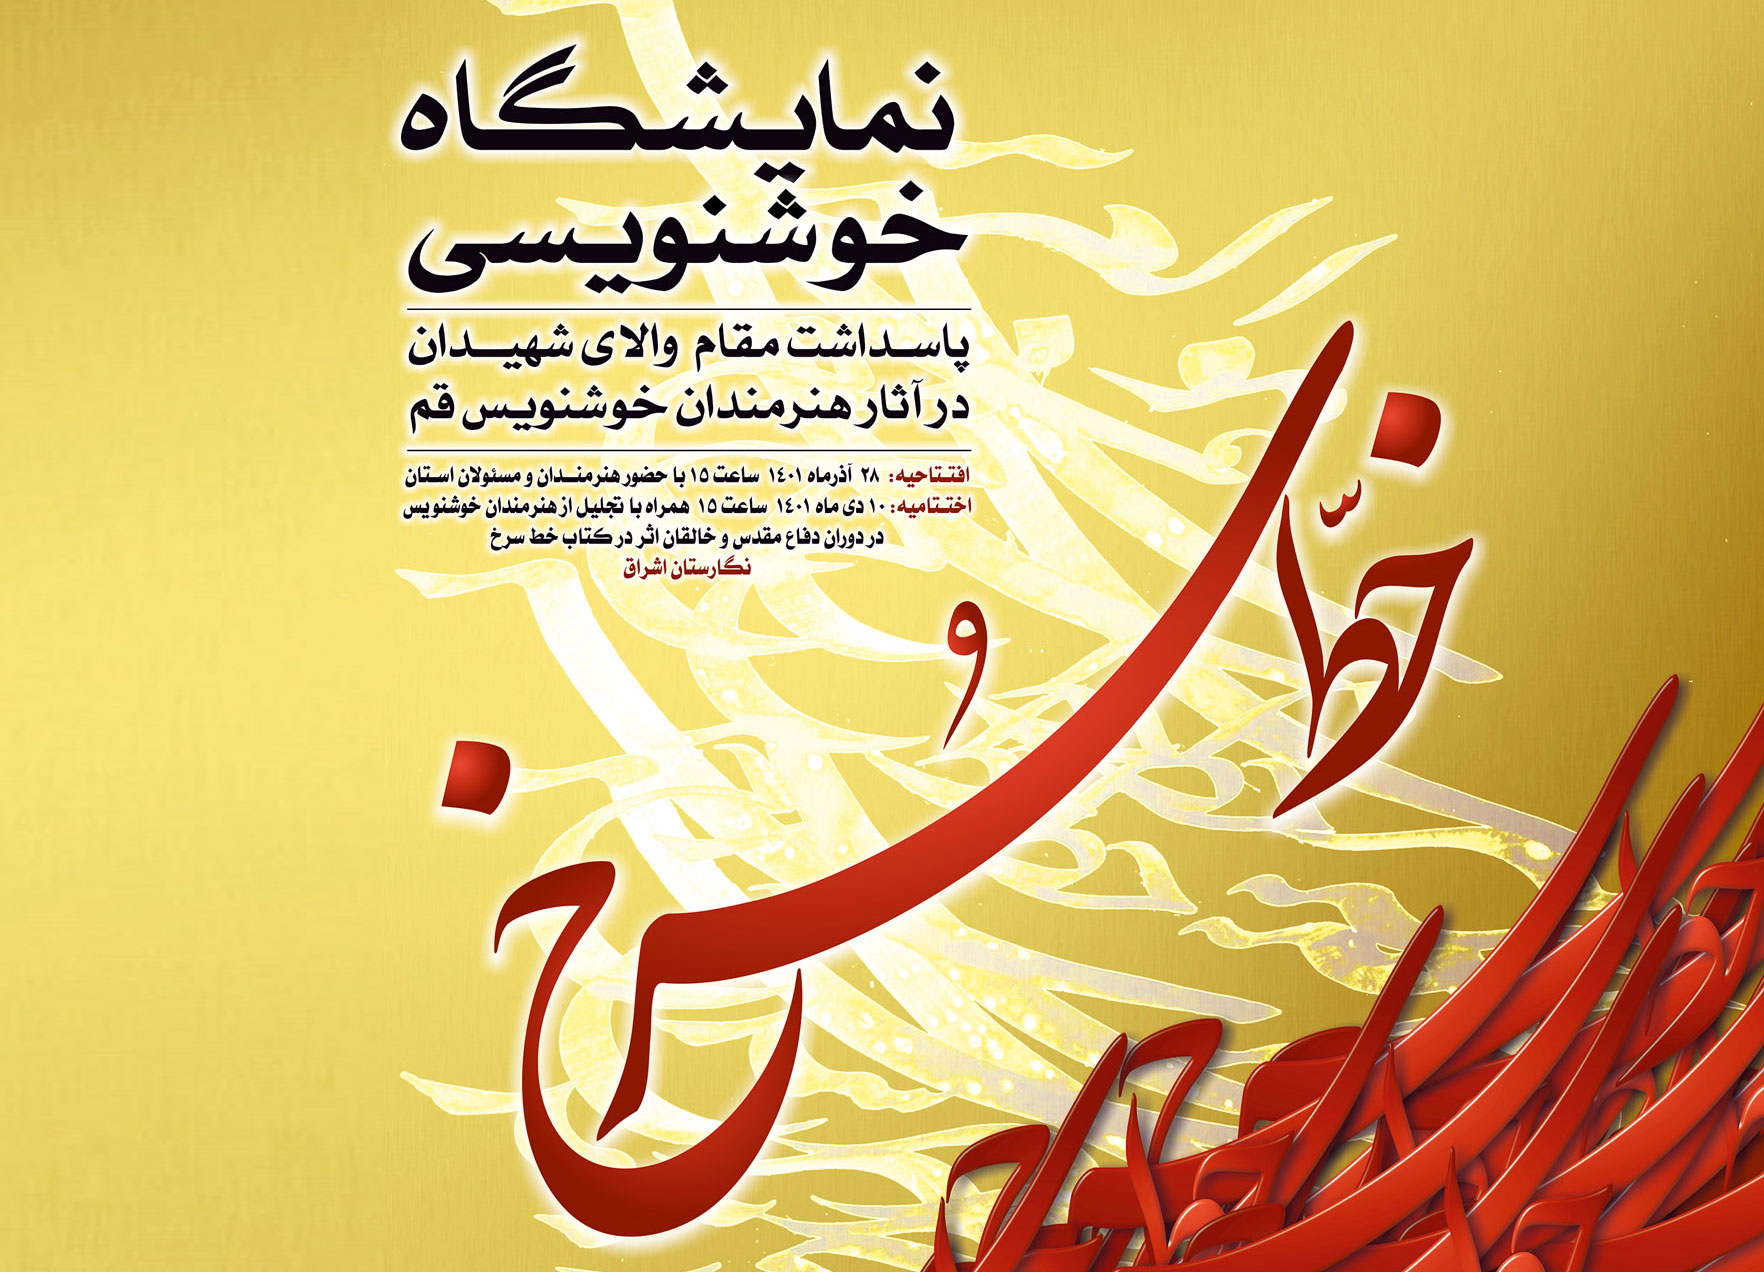 نمایشگاه خوشنویسی خط سرخ با هدف بزرگداشت و پاسداشت مقام والای شهیدان استان قم